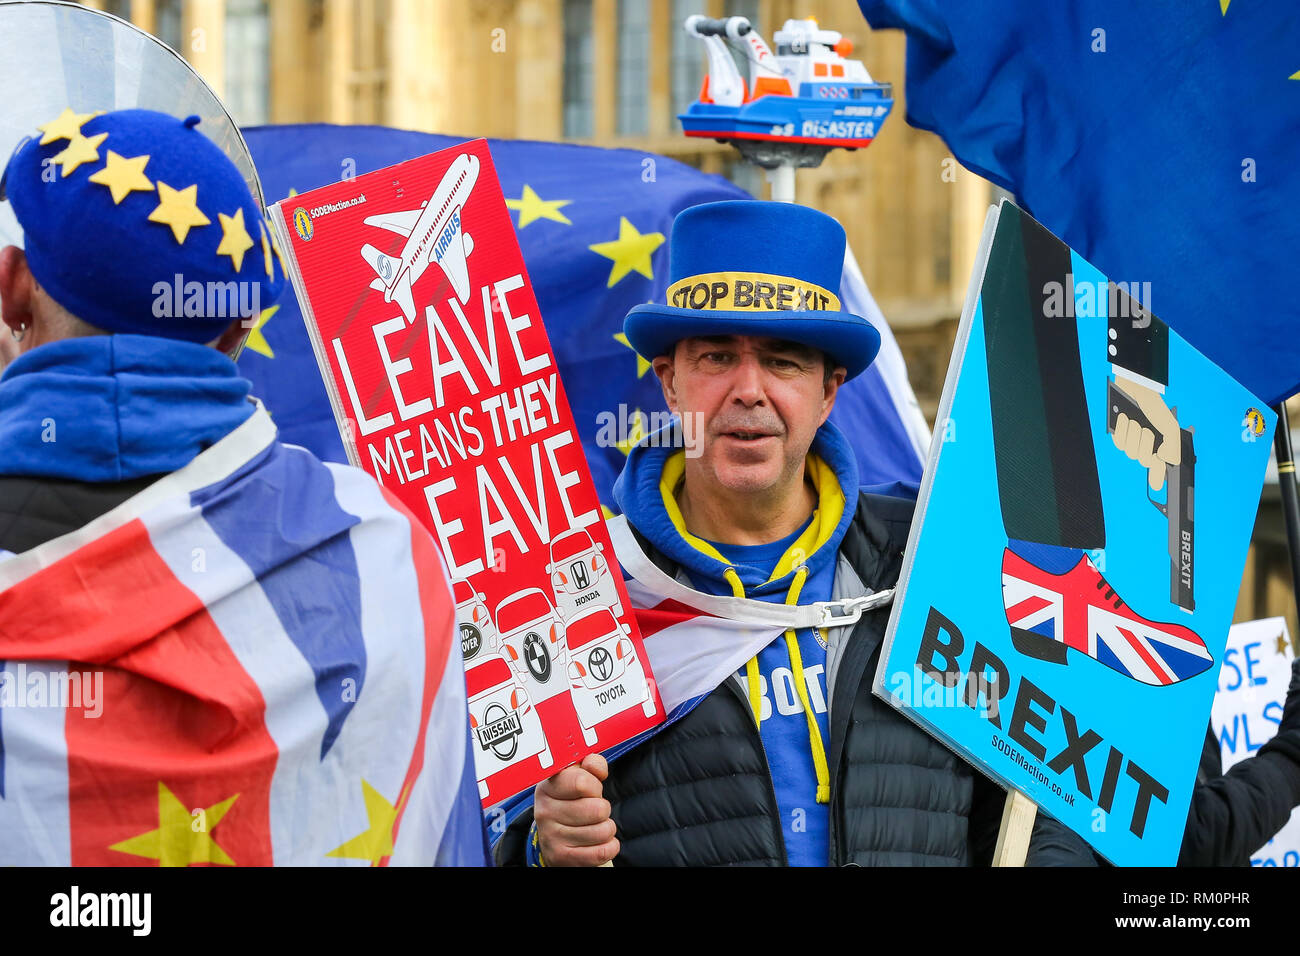 Steven Bray fondateur de SODEM (Stand de Défi Mouvement européen) vu avec des pancartes lors d'un Brexit anti-protestation devant Downing Street à Londres. Banque D'Images